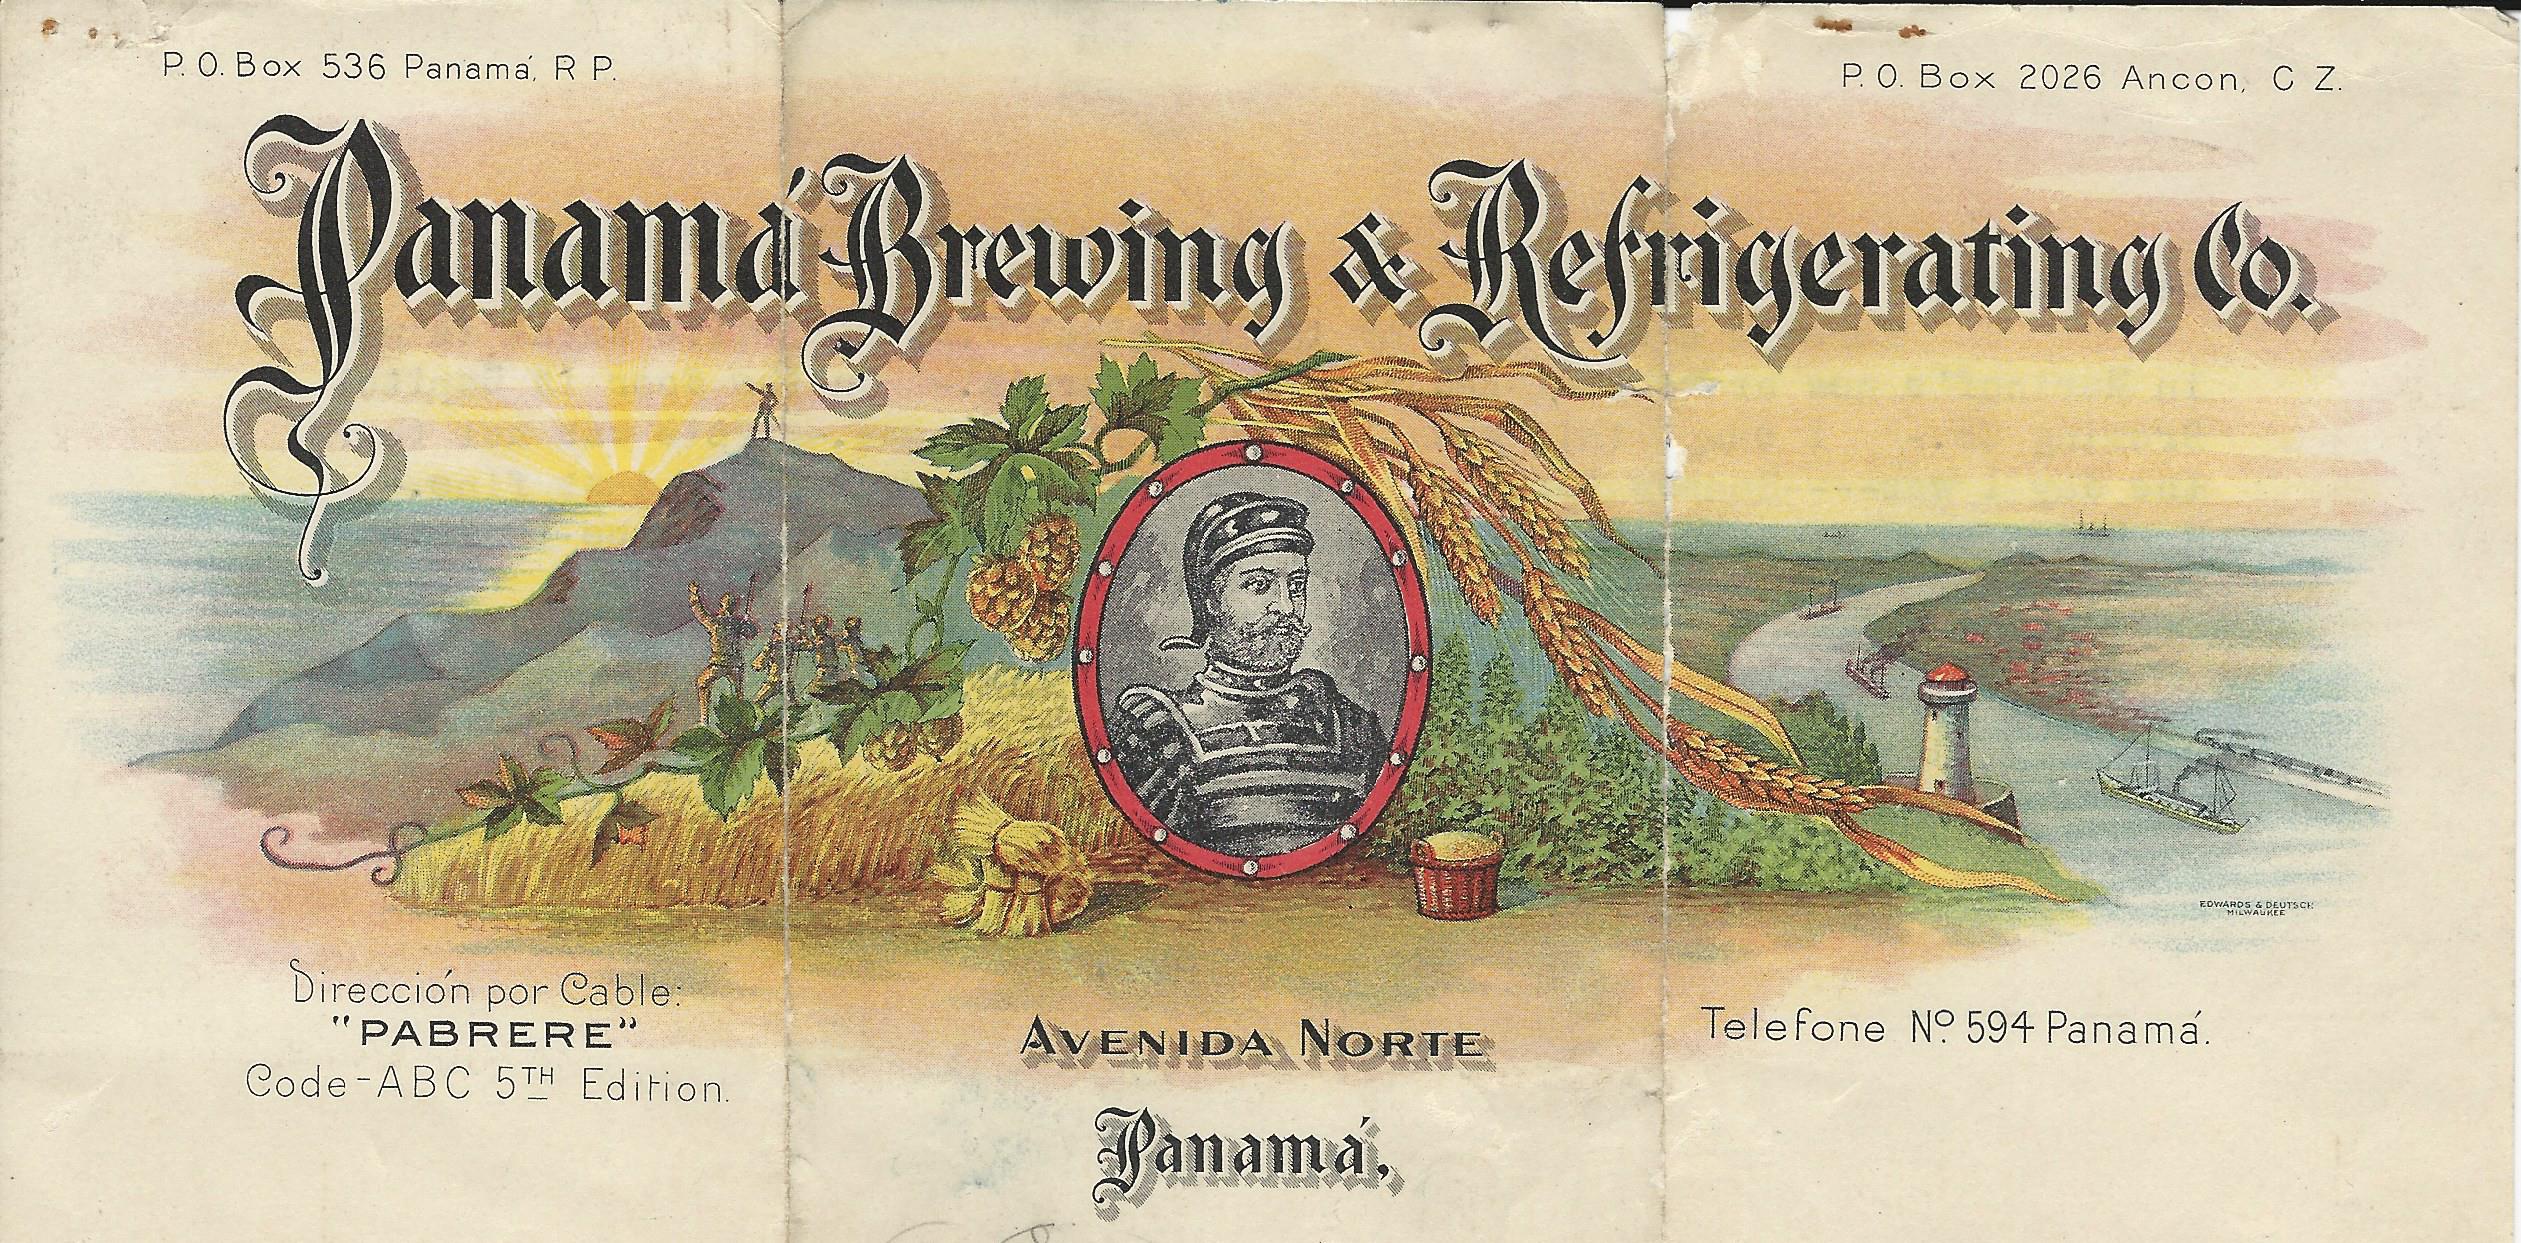 Panama brewery